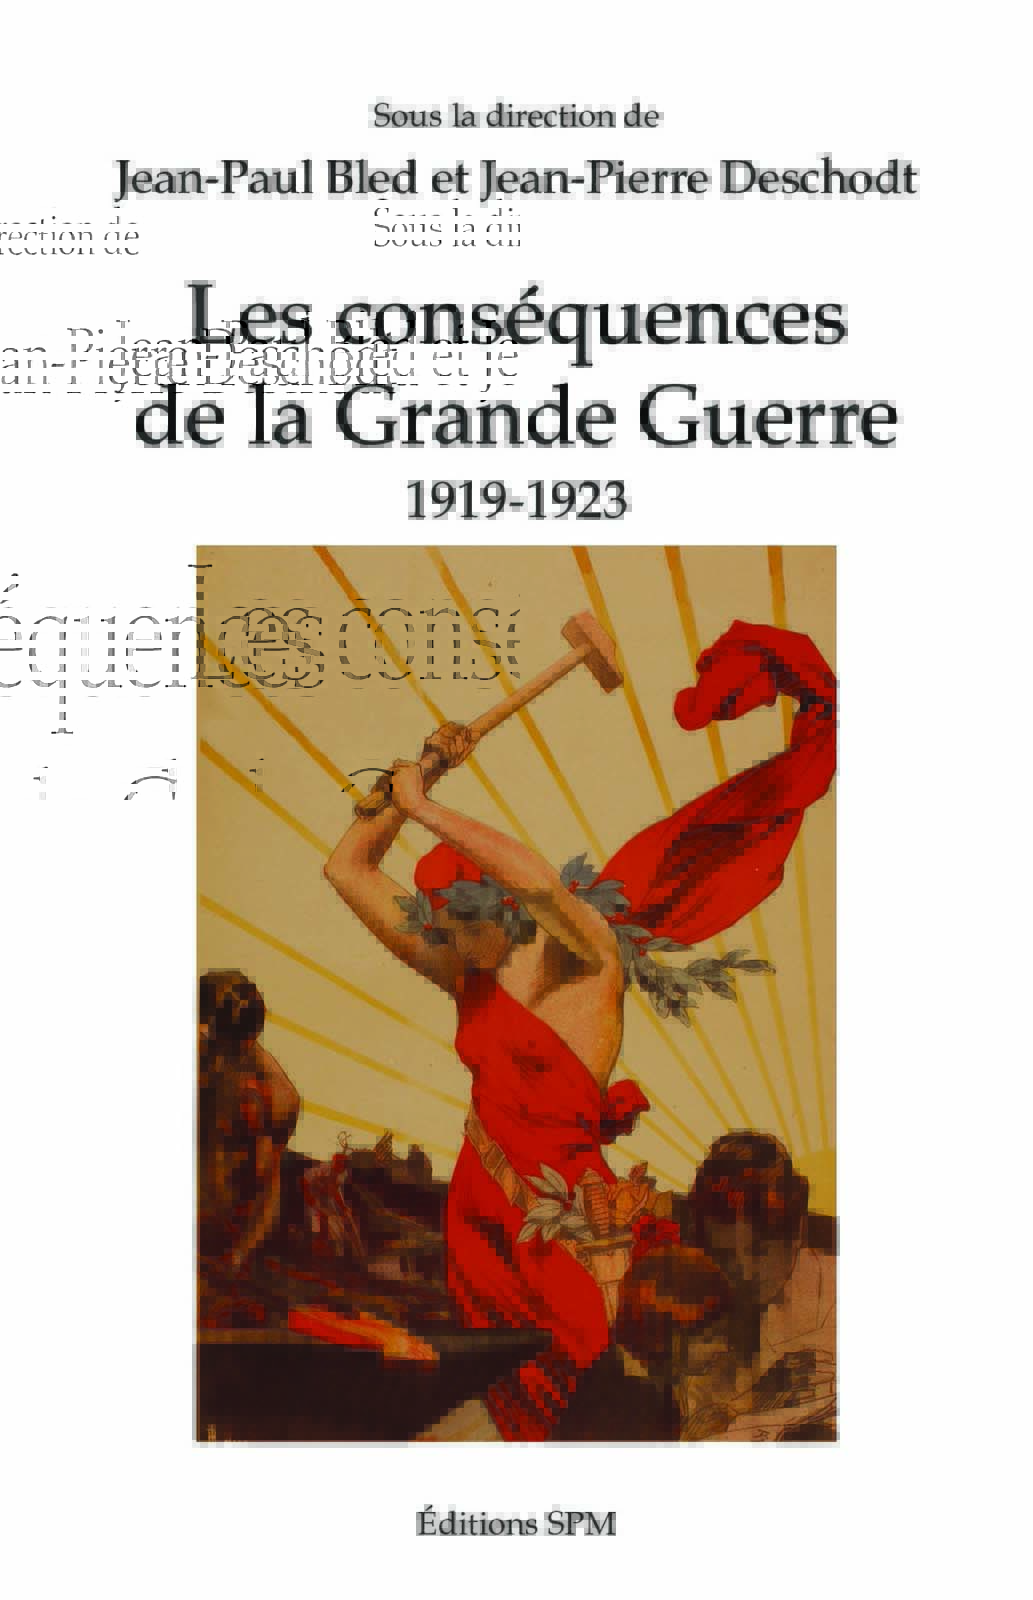 "Les conséquences de la Grande Guerre 1919-1923", publié aux éditions SPM